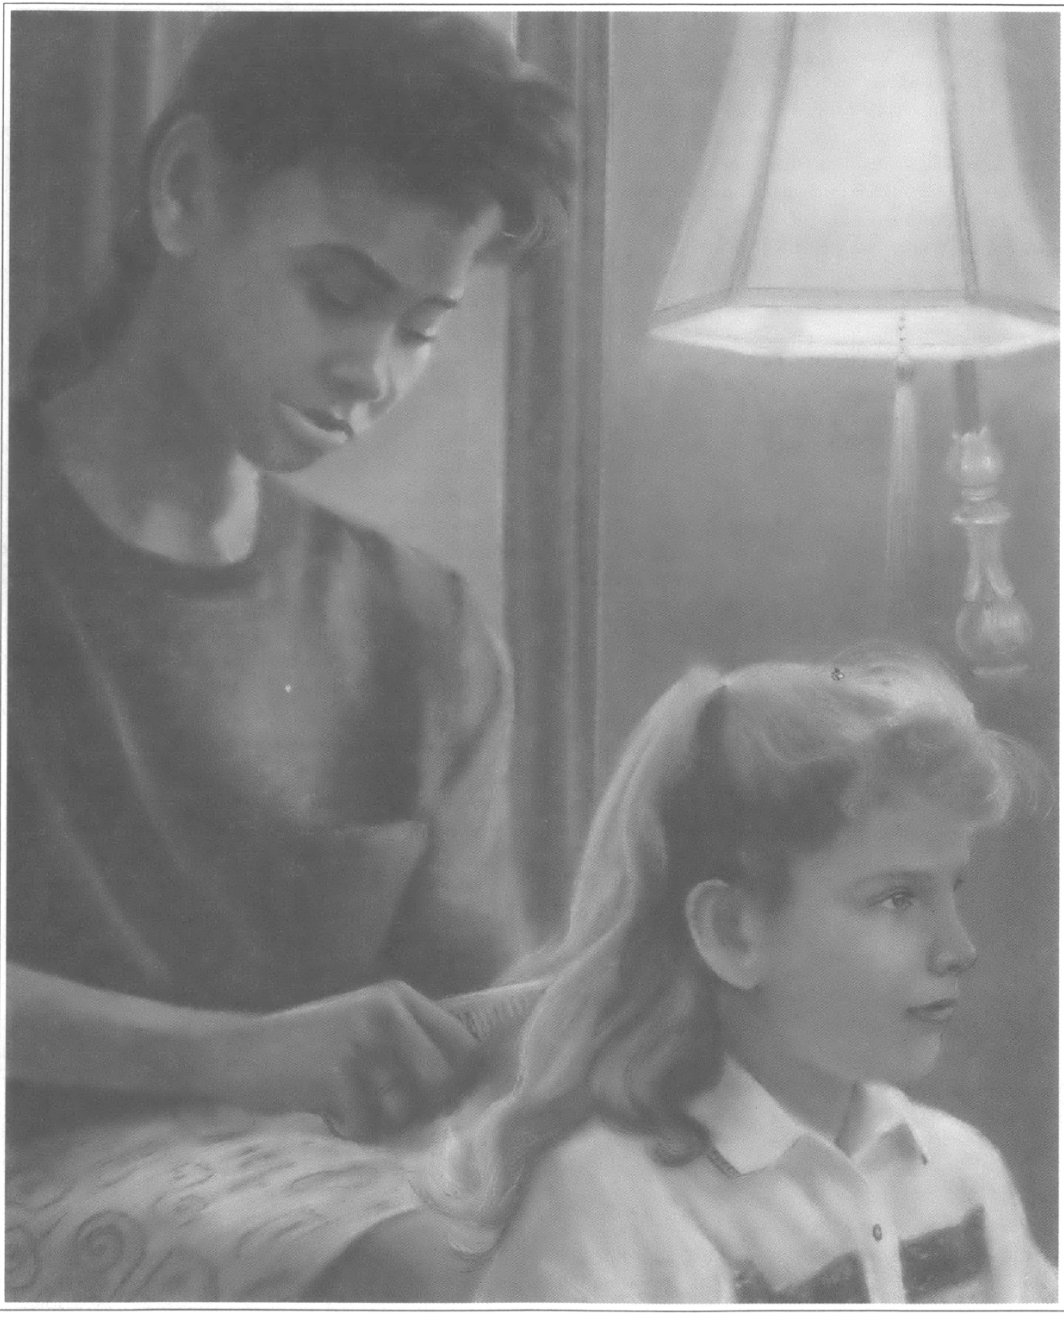 woman brushing child's hair